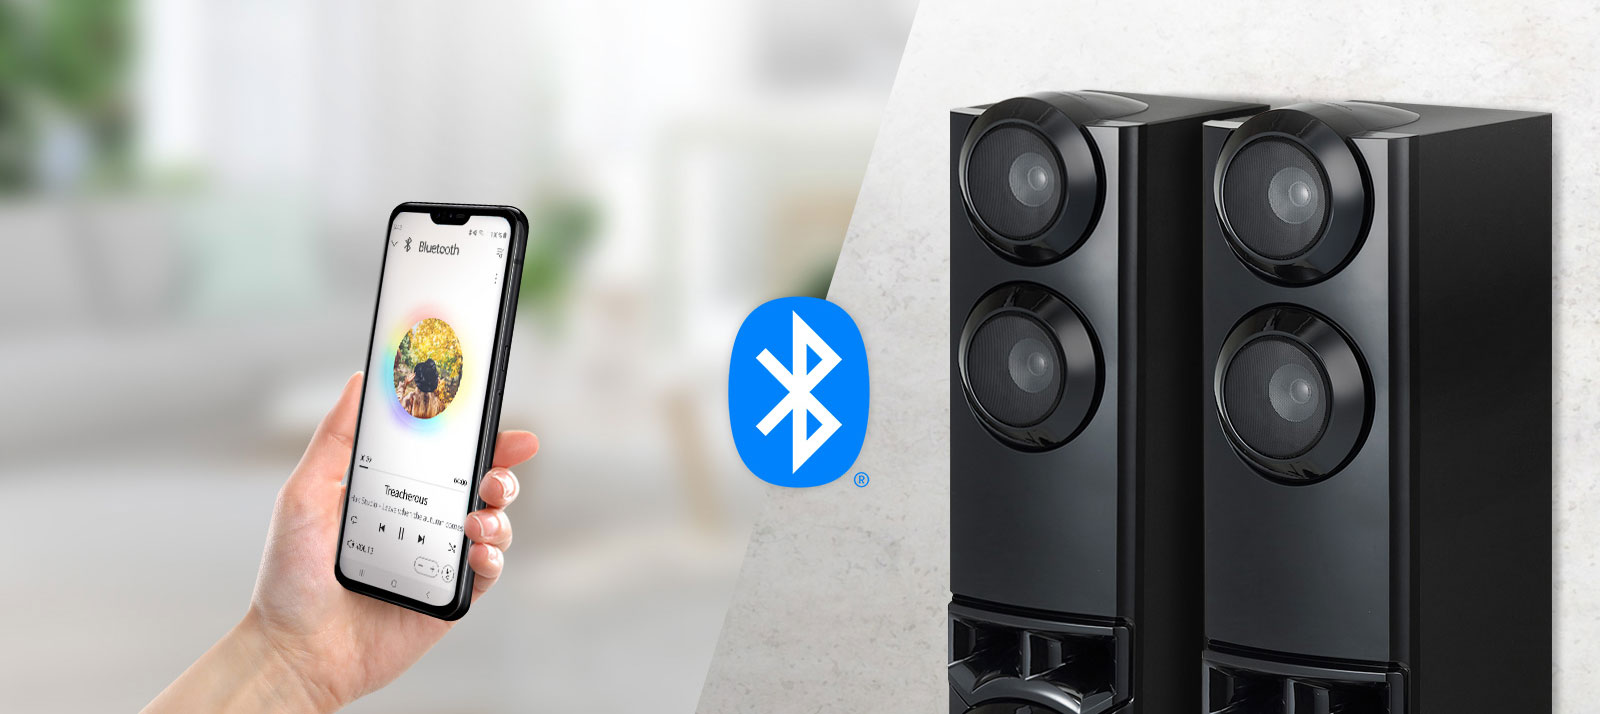 Un smartphone et des haut-parleurs sont connectés, et il y a un logo Bluetooth entre les haut-parleurs et le smartphone.